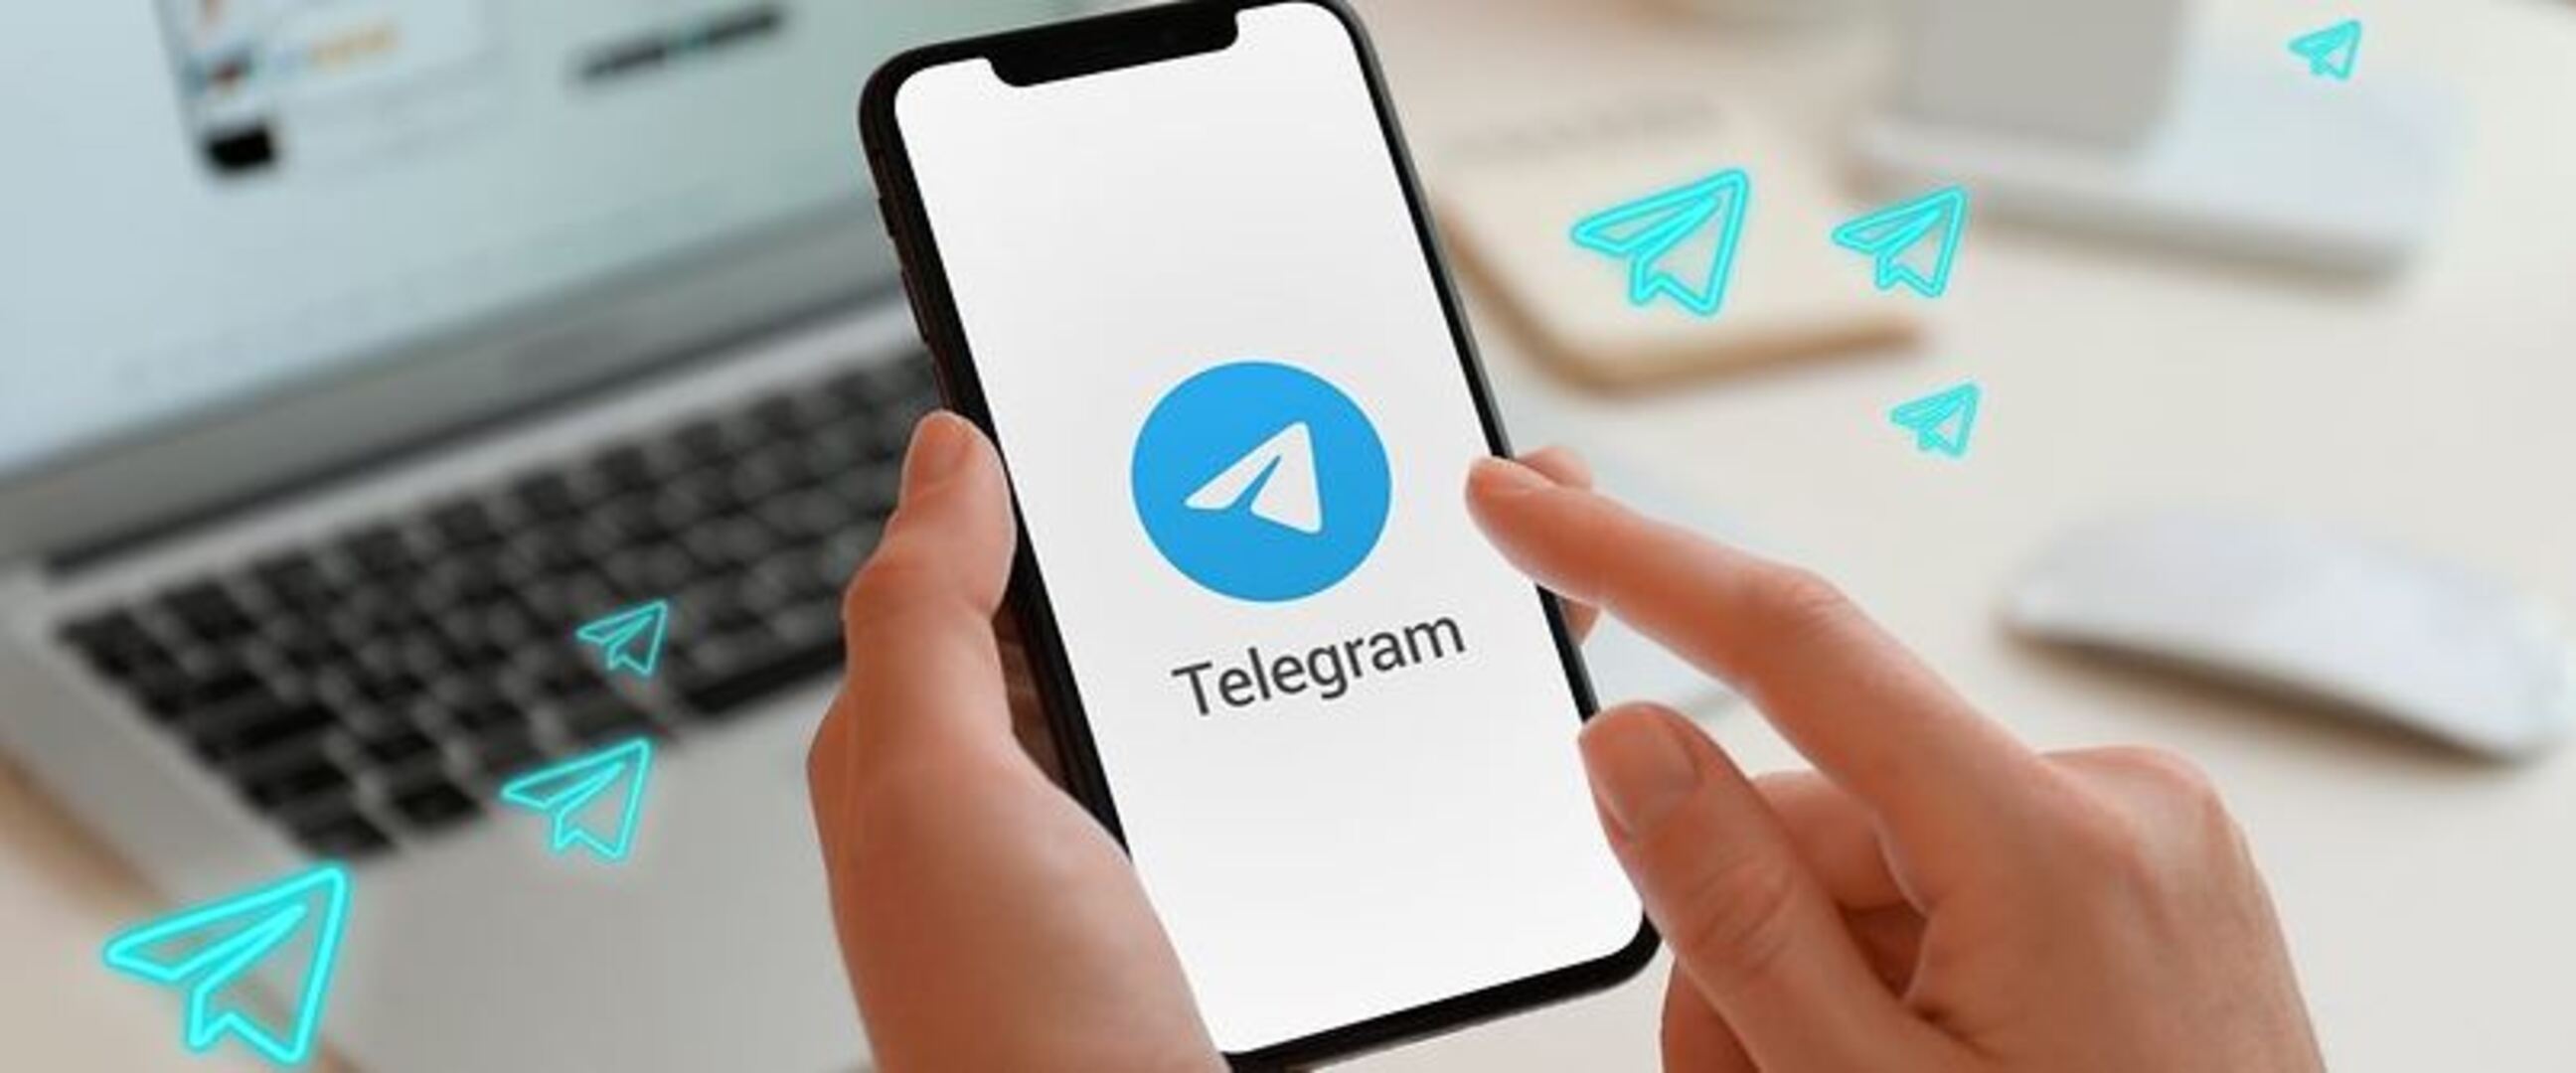 Cara download film di Telegram melalui Android, iPhone, dan komputer